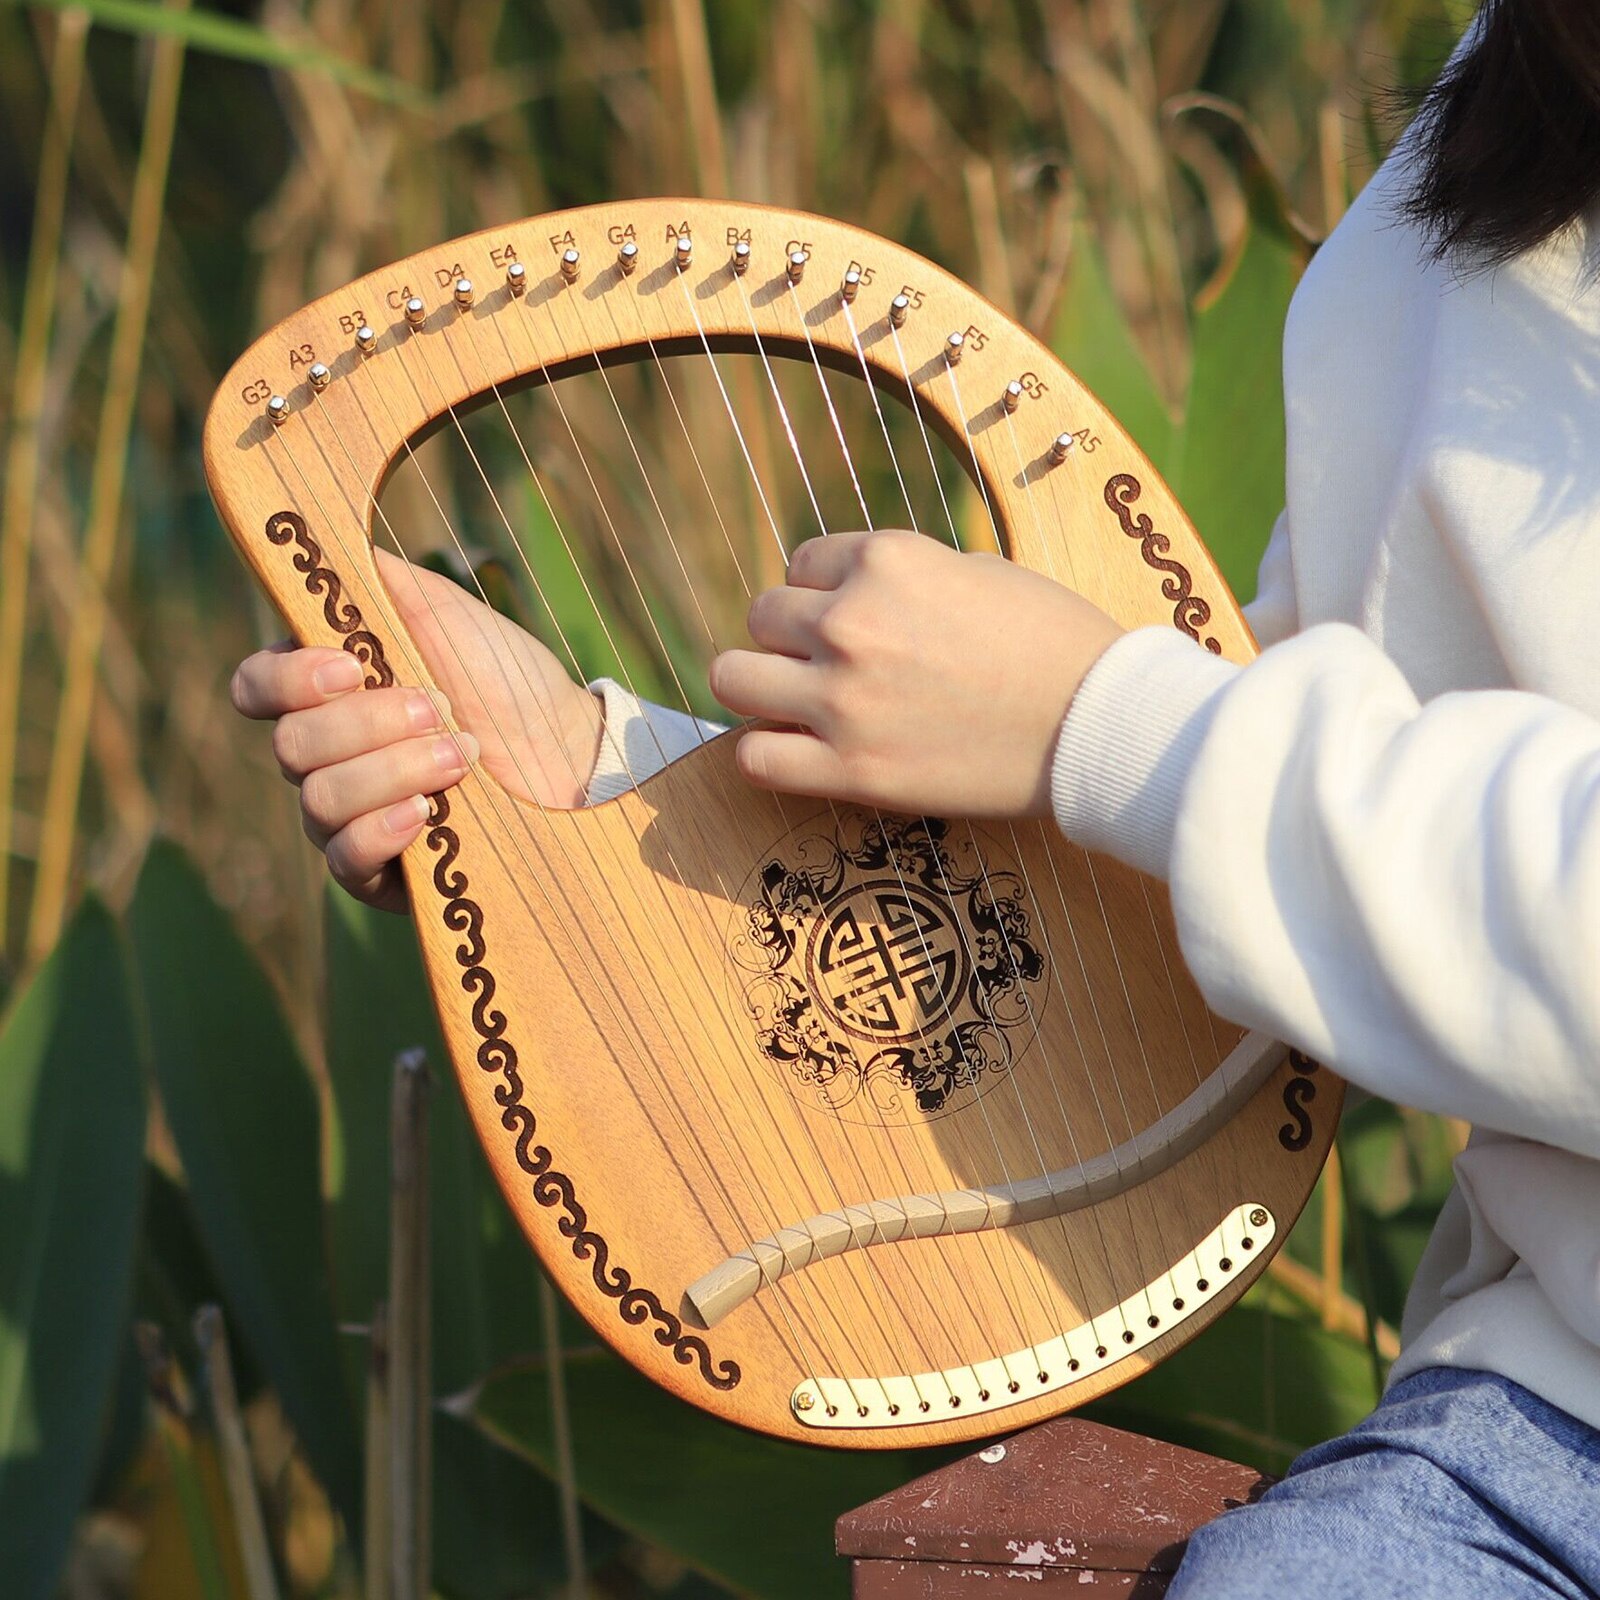 16 strenge harpe mahogni træ m/ skruenøgle godt år for børn voksne